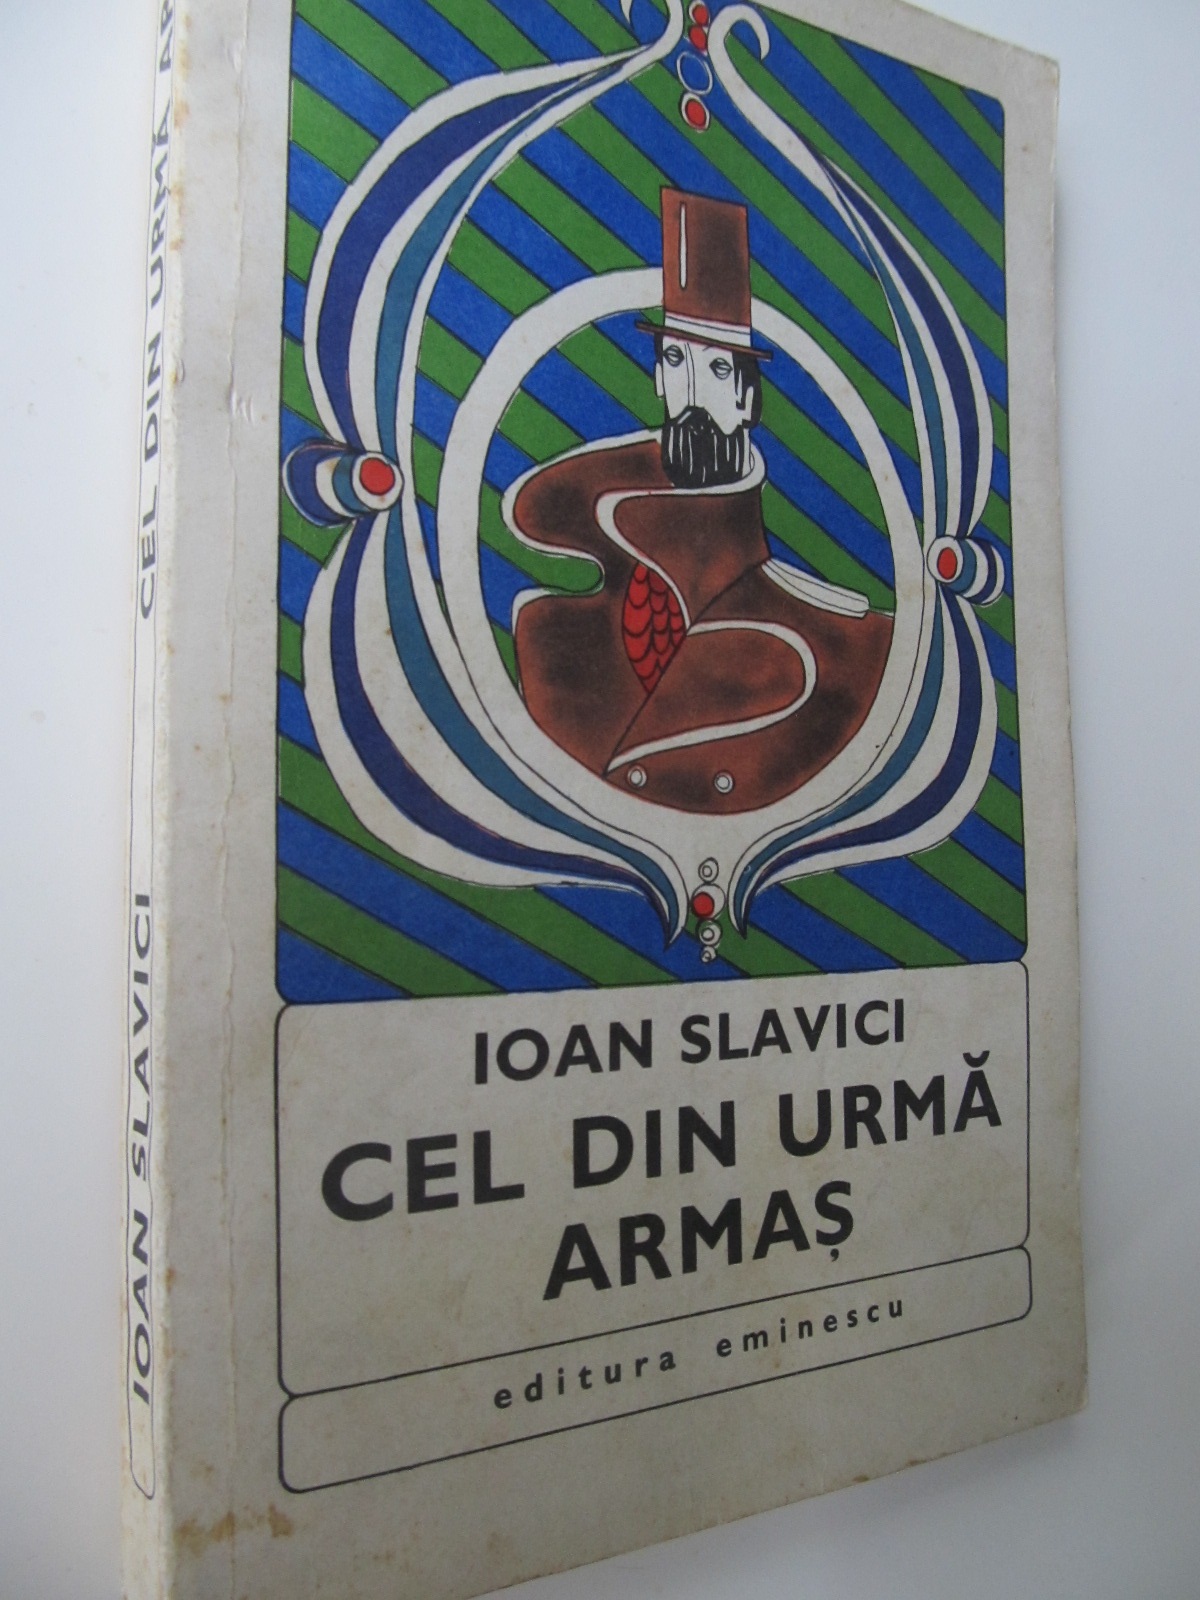 Cel din urma armas - Ioan Slavicu | Detalii carte